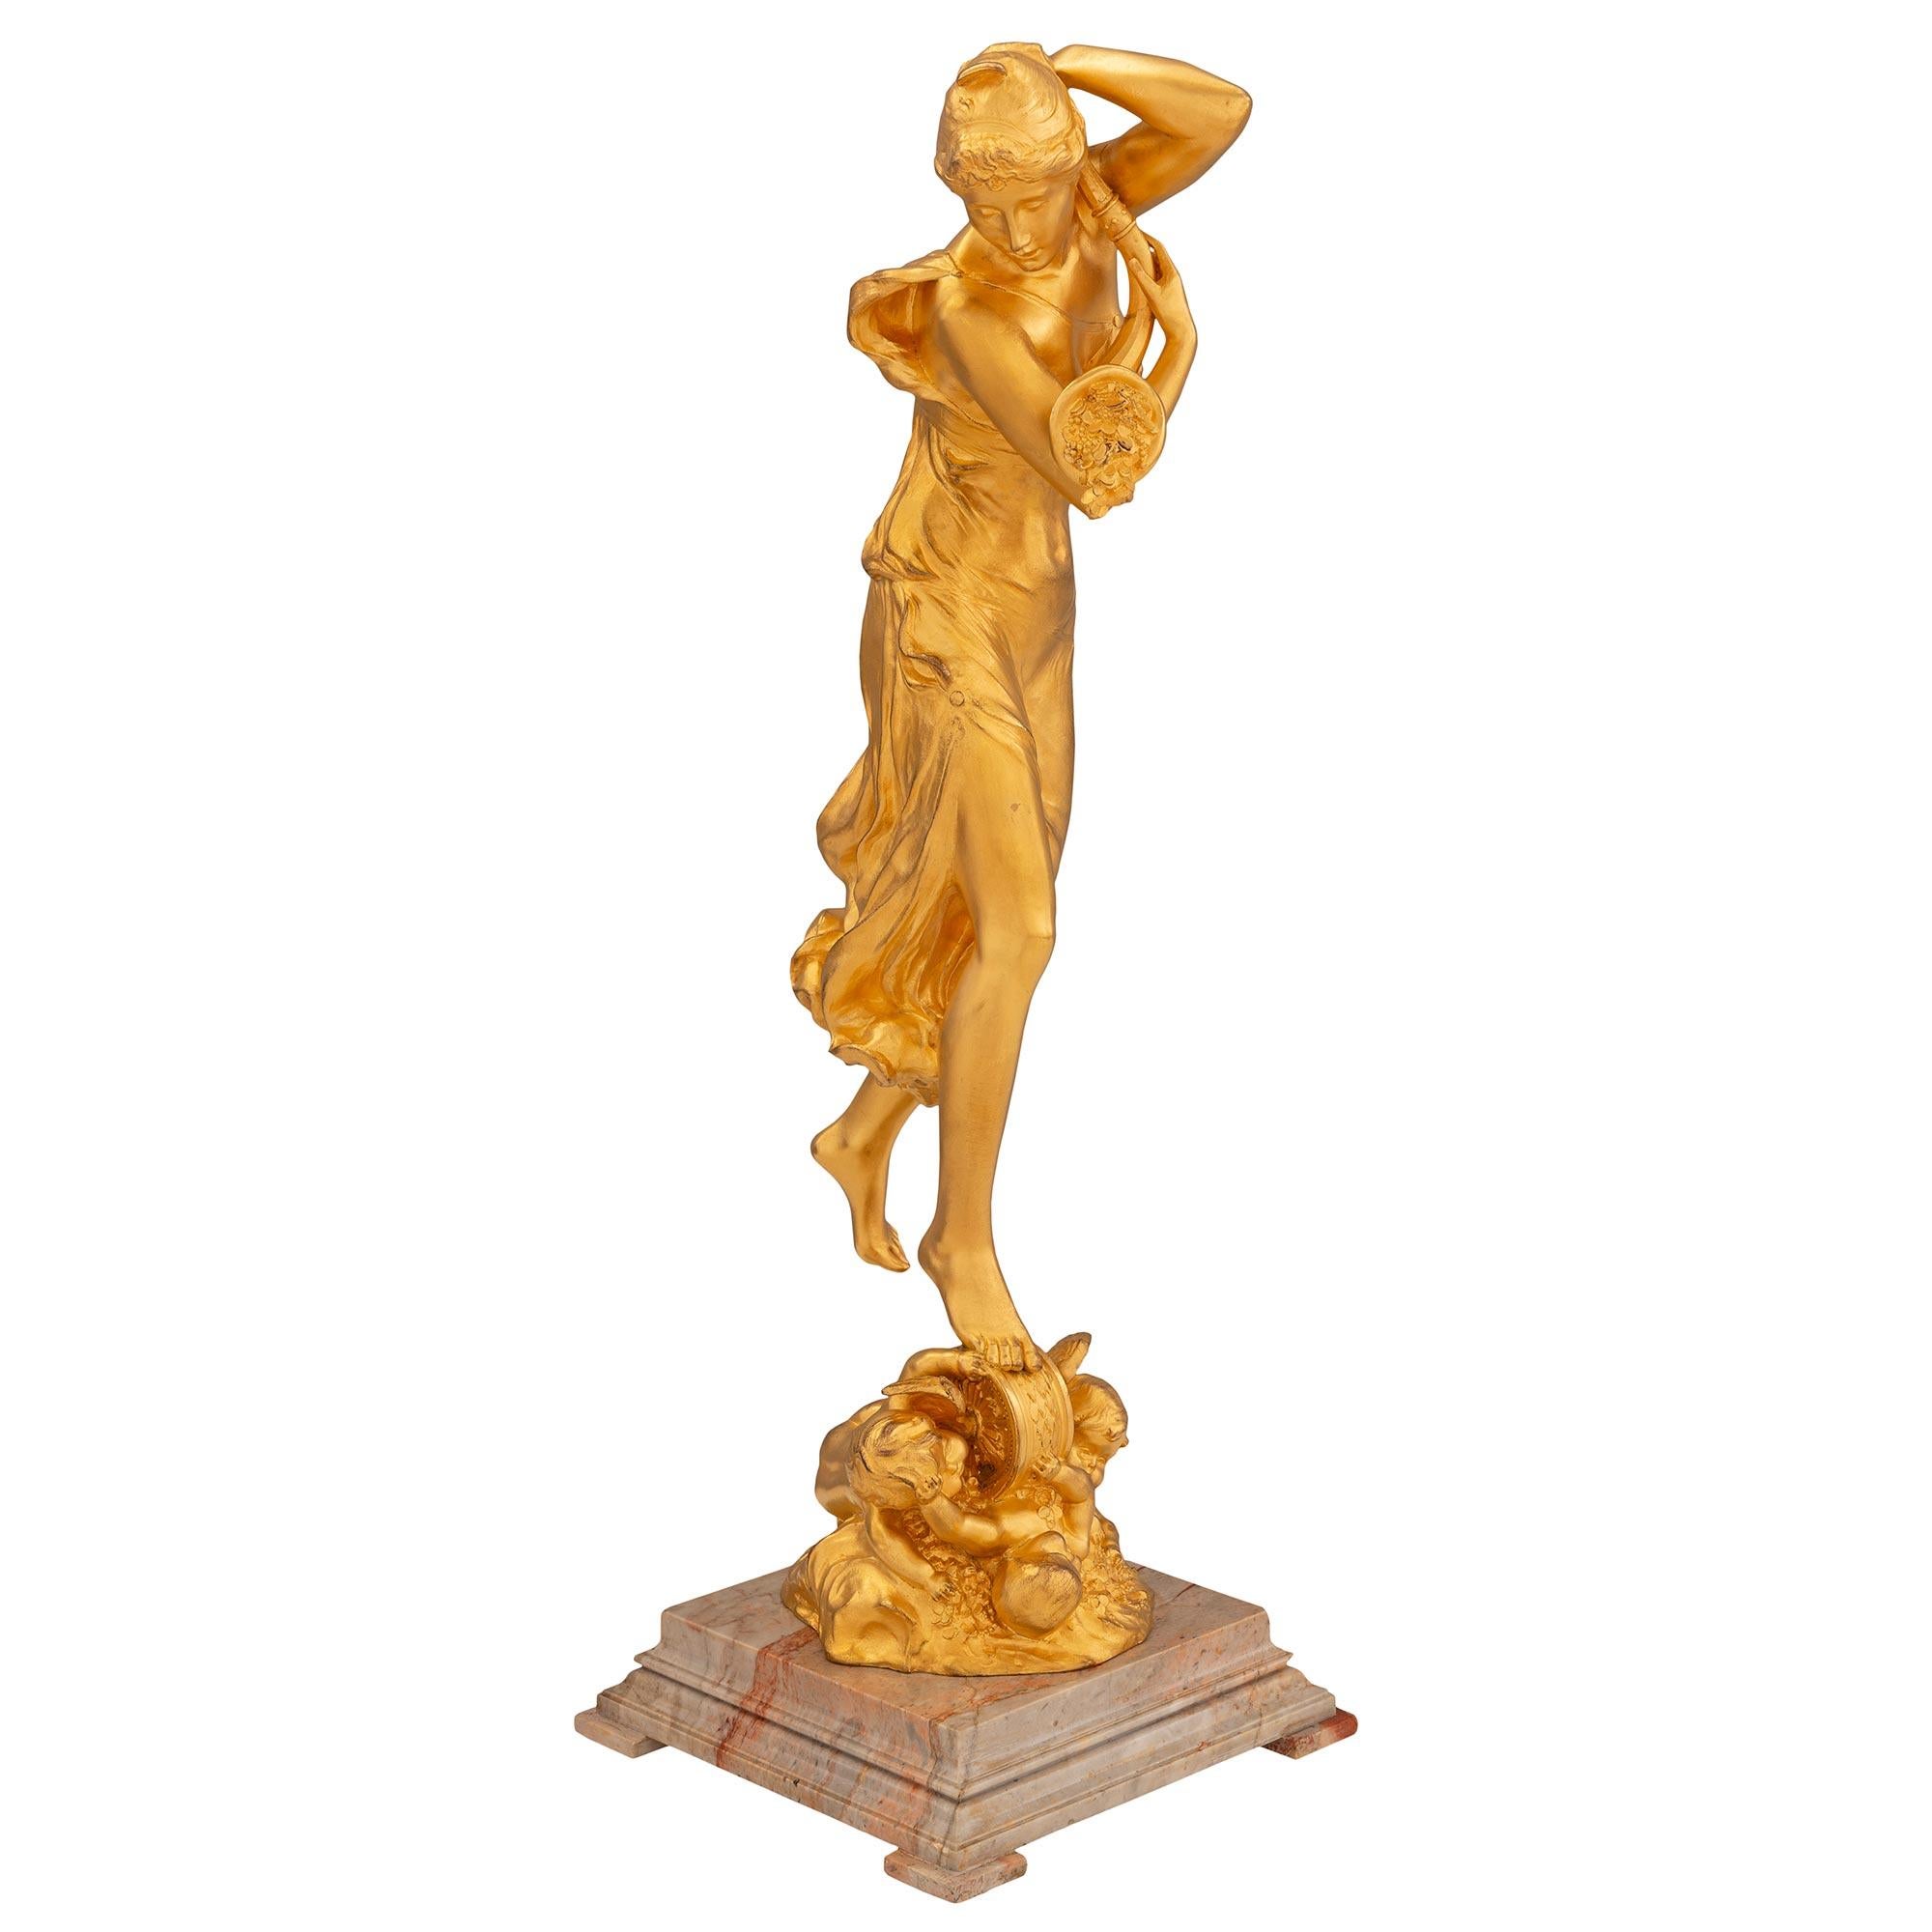 Une élégante statue en bronze doré et marbre Sarrancolin de style Louis XVI, signée Charles Samuel 1894 et Petermann Fondeur Bruxelles. La statue est surélevée par une belle base en marbre Sarrancolin tacheté à gradins, avec des pieds en bloc